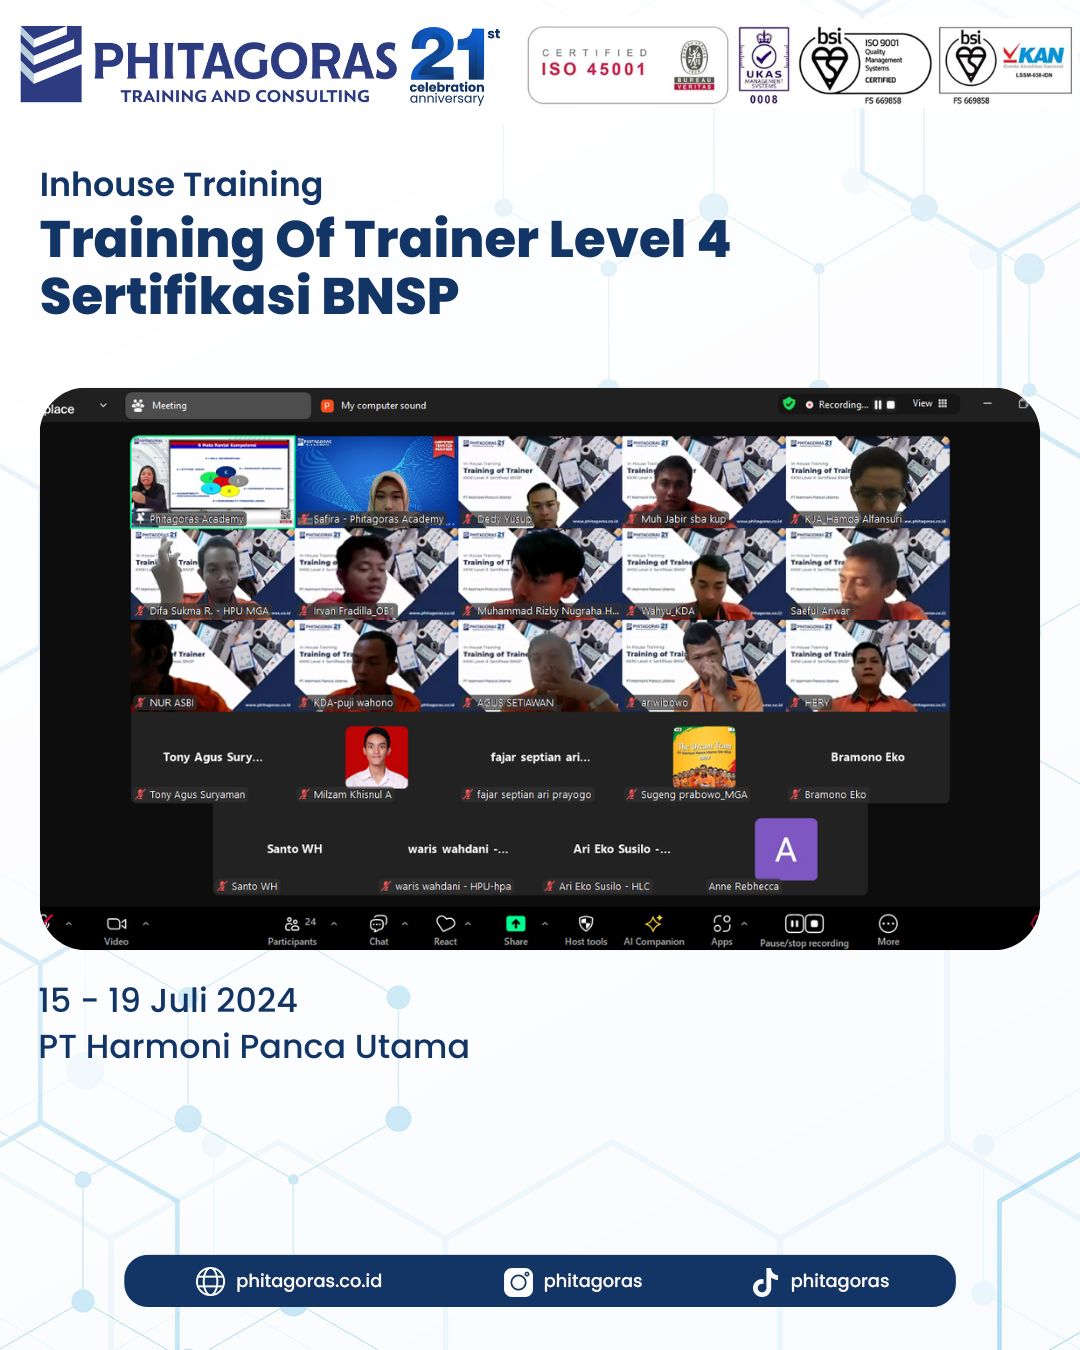 Inhouse Training Of Trainer Level 4 Sertifikasi BNSP - PT Harmoni Panca Utama Tanggal 15 - 19 Juli 2024